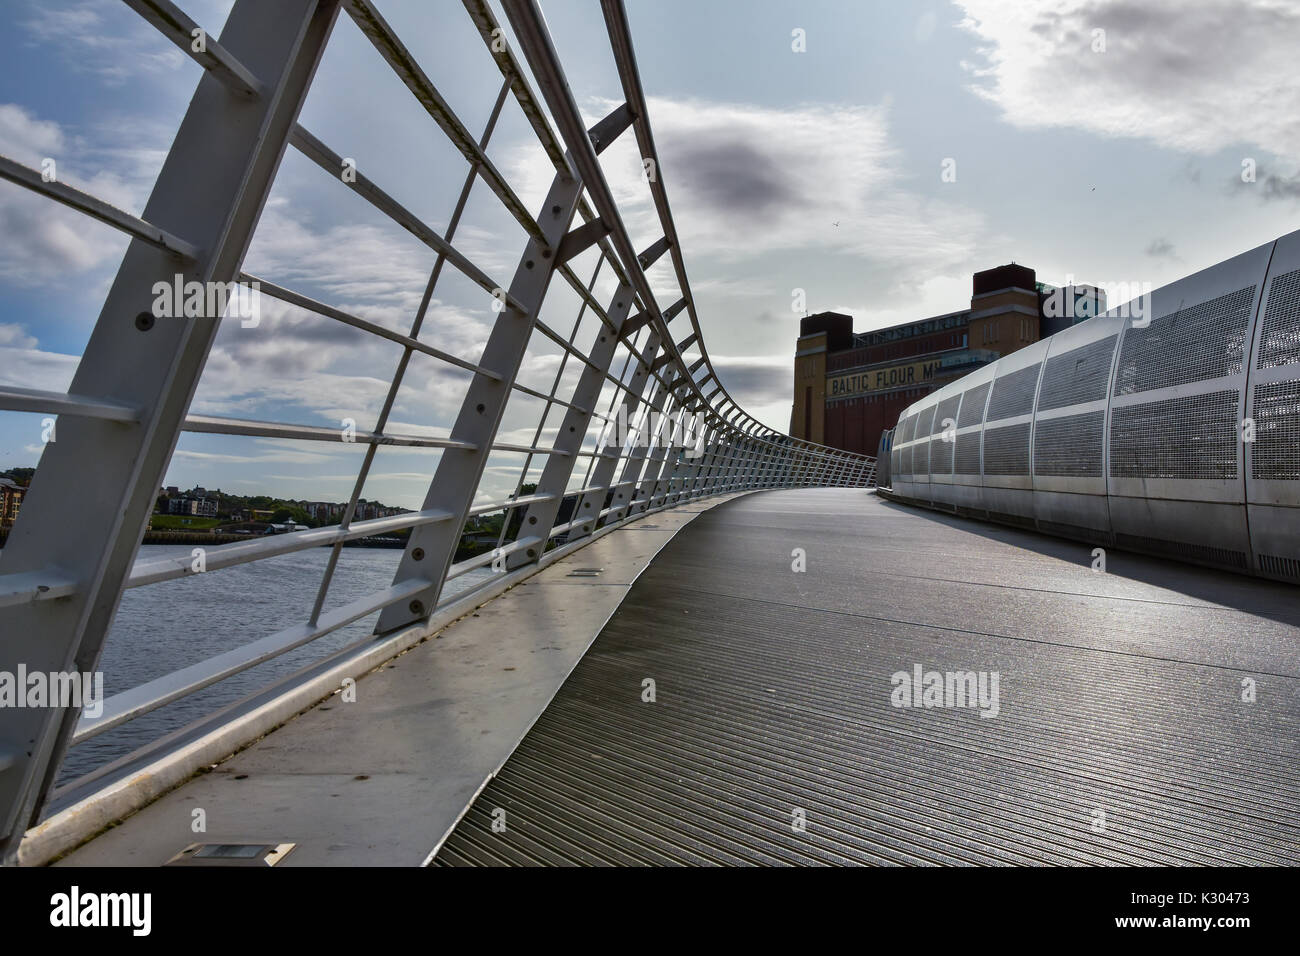 Gateshead Baltic mulino di farina alla fine del Millennium Bridge Foto Stock